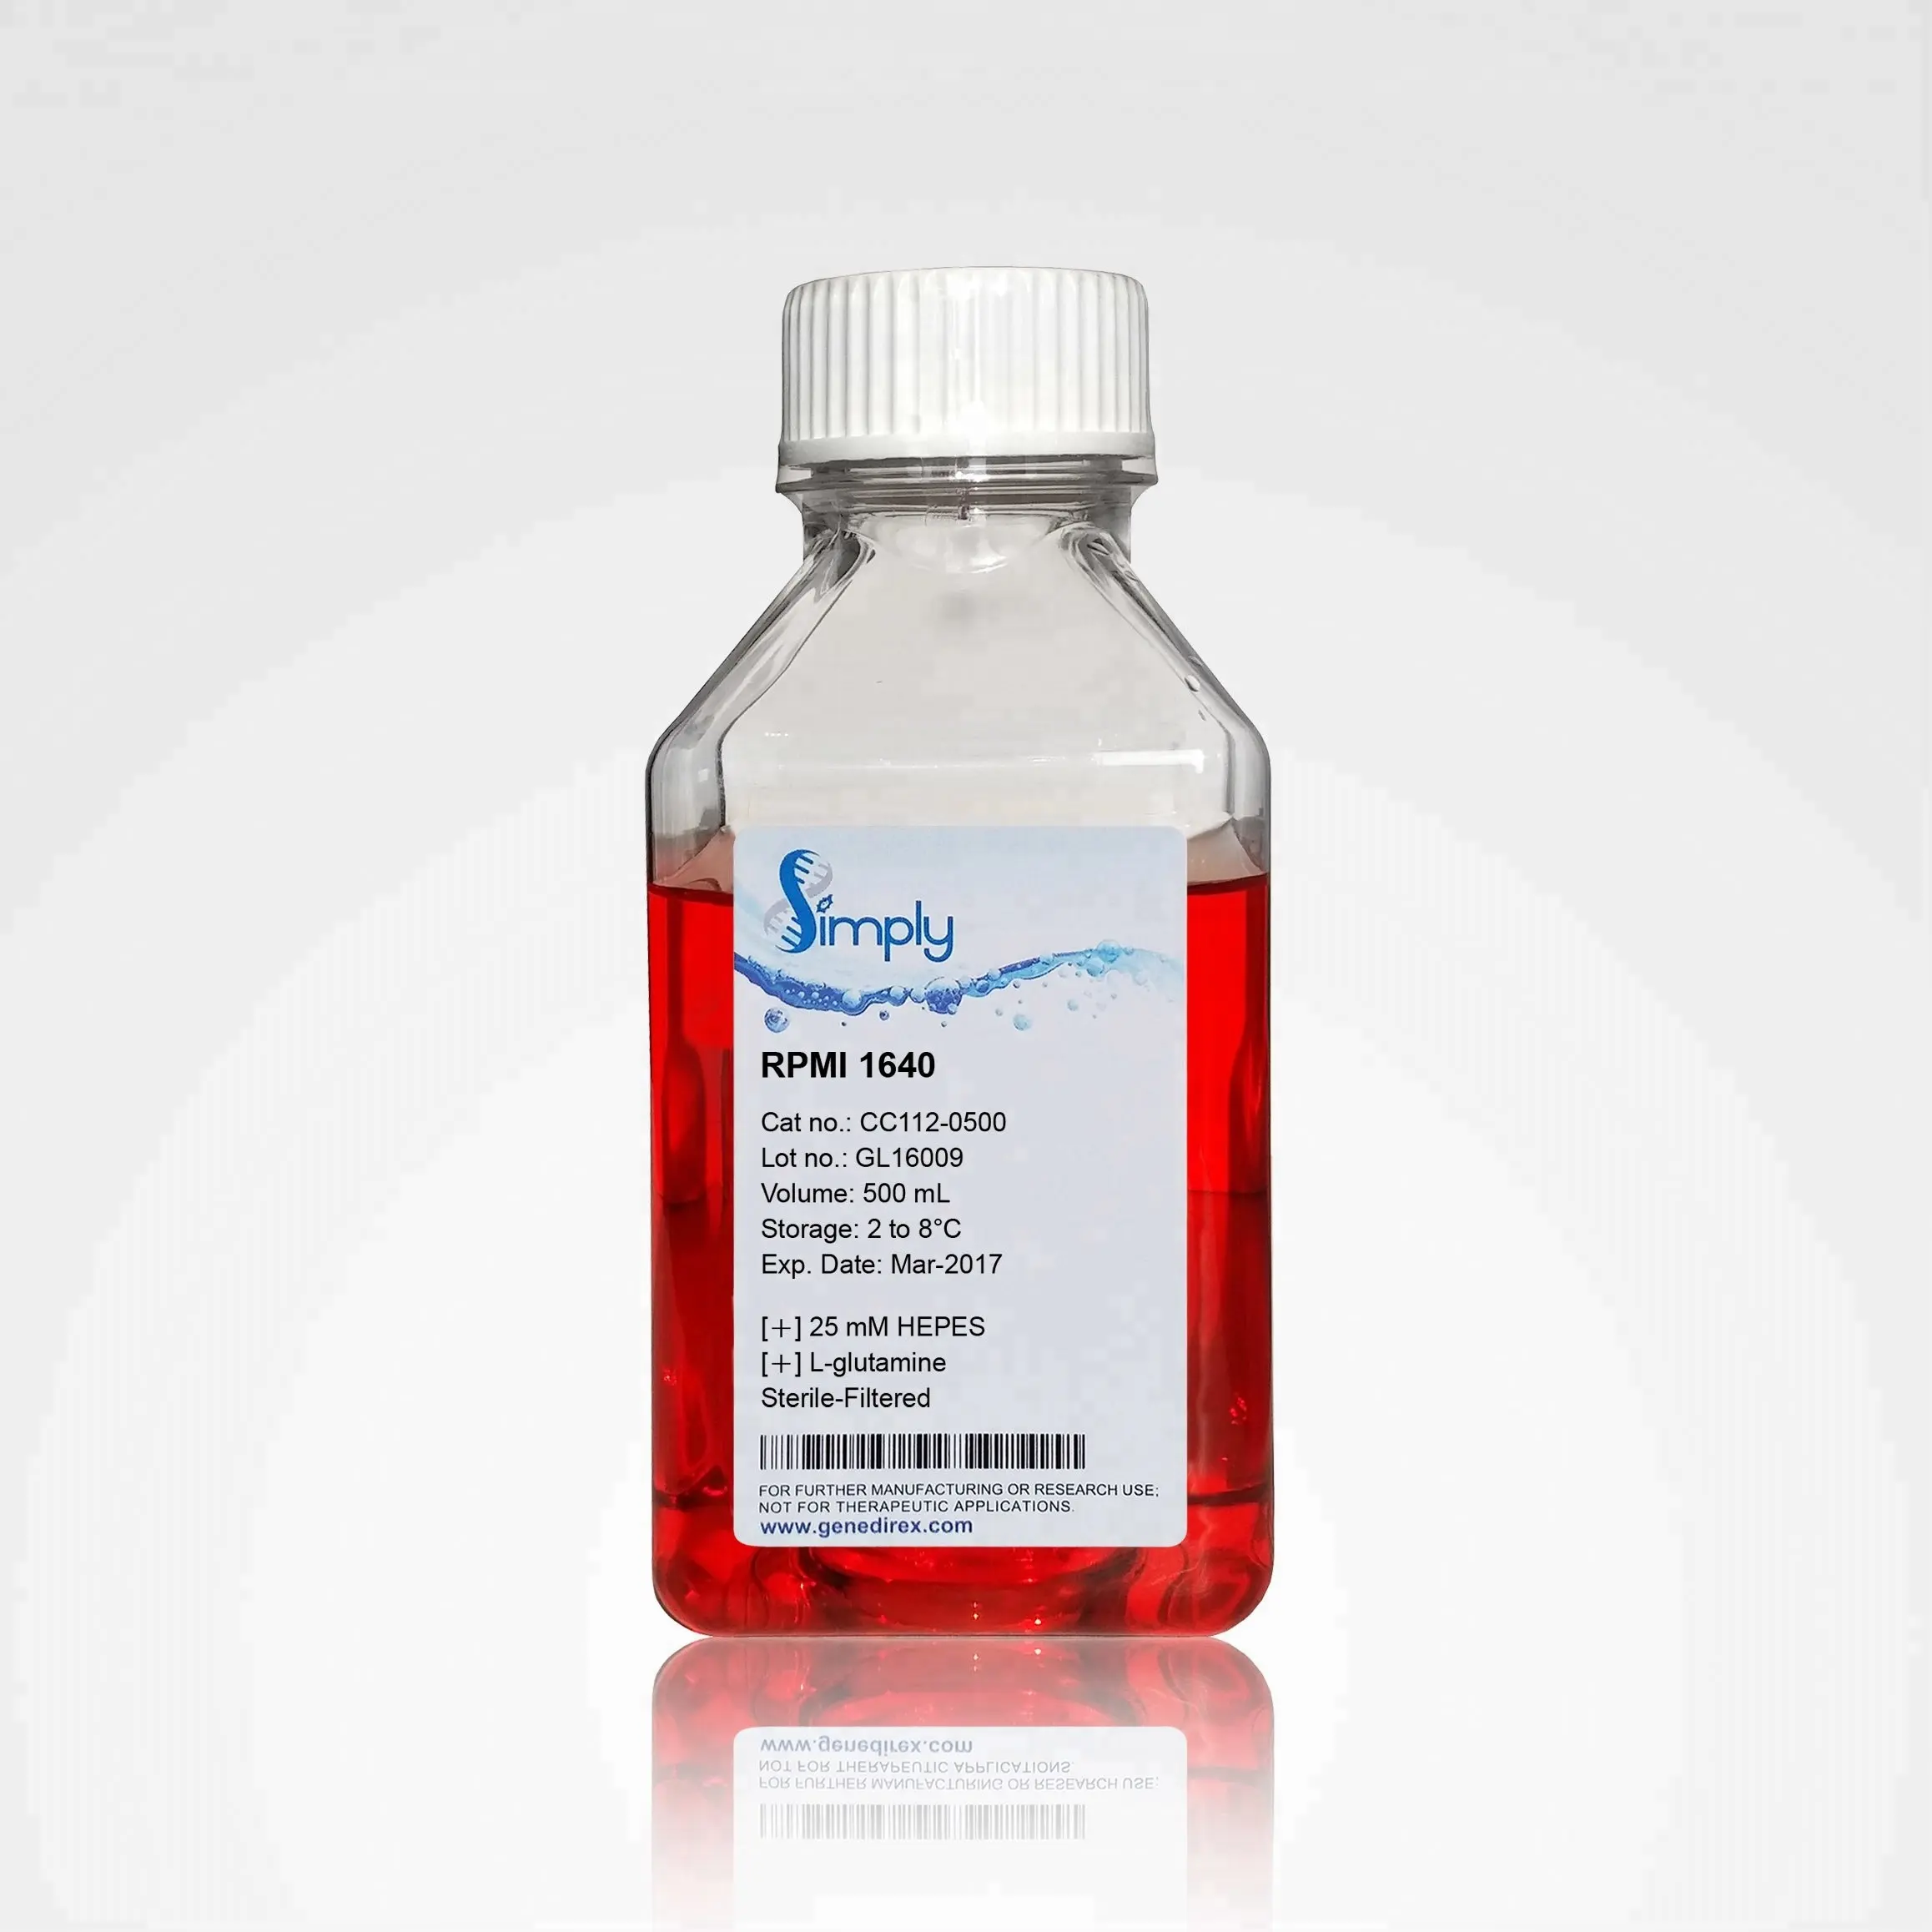 RPMI 1640 con glucosa. L-glutamina y lisadas en 50mm pipes/Koh (medios de cultivo celular)